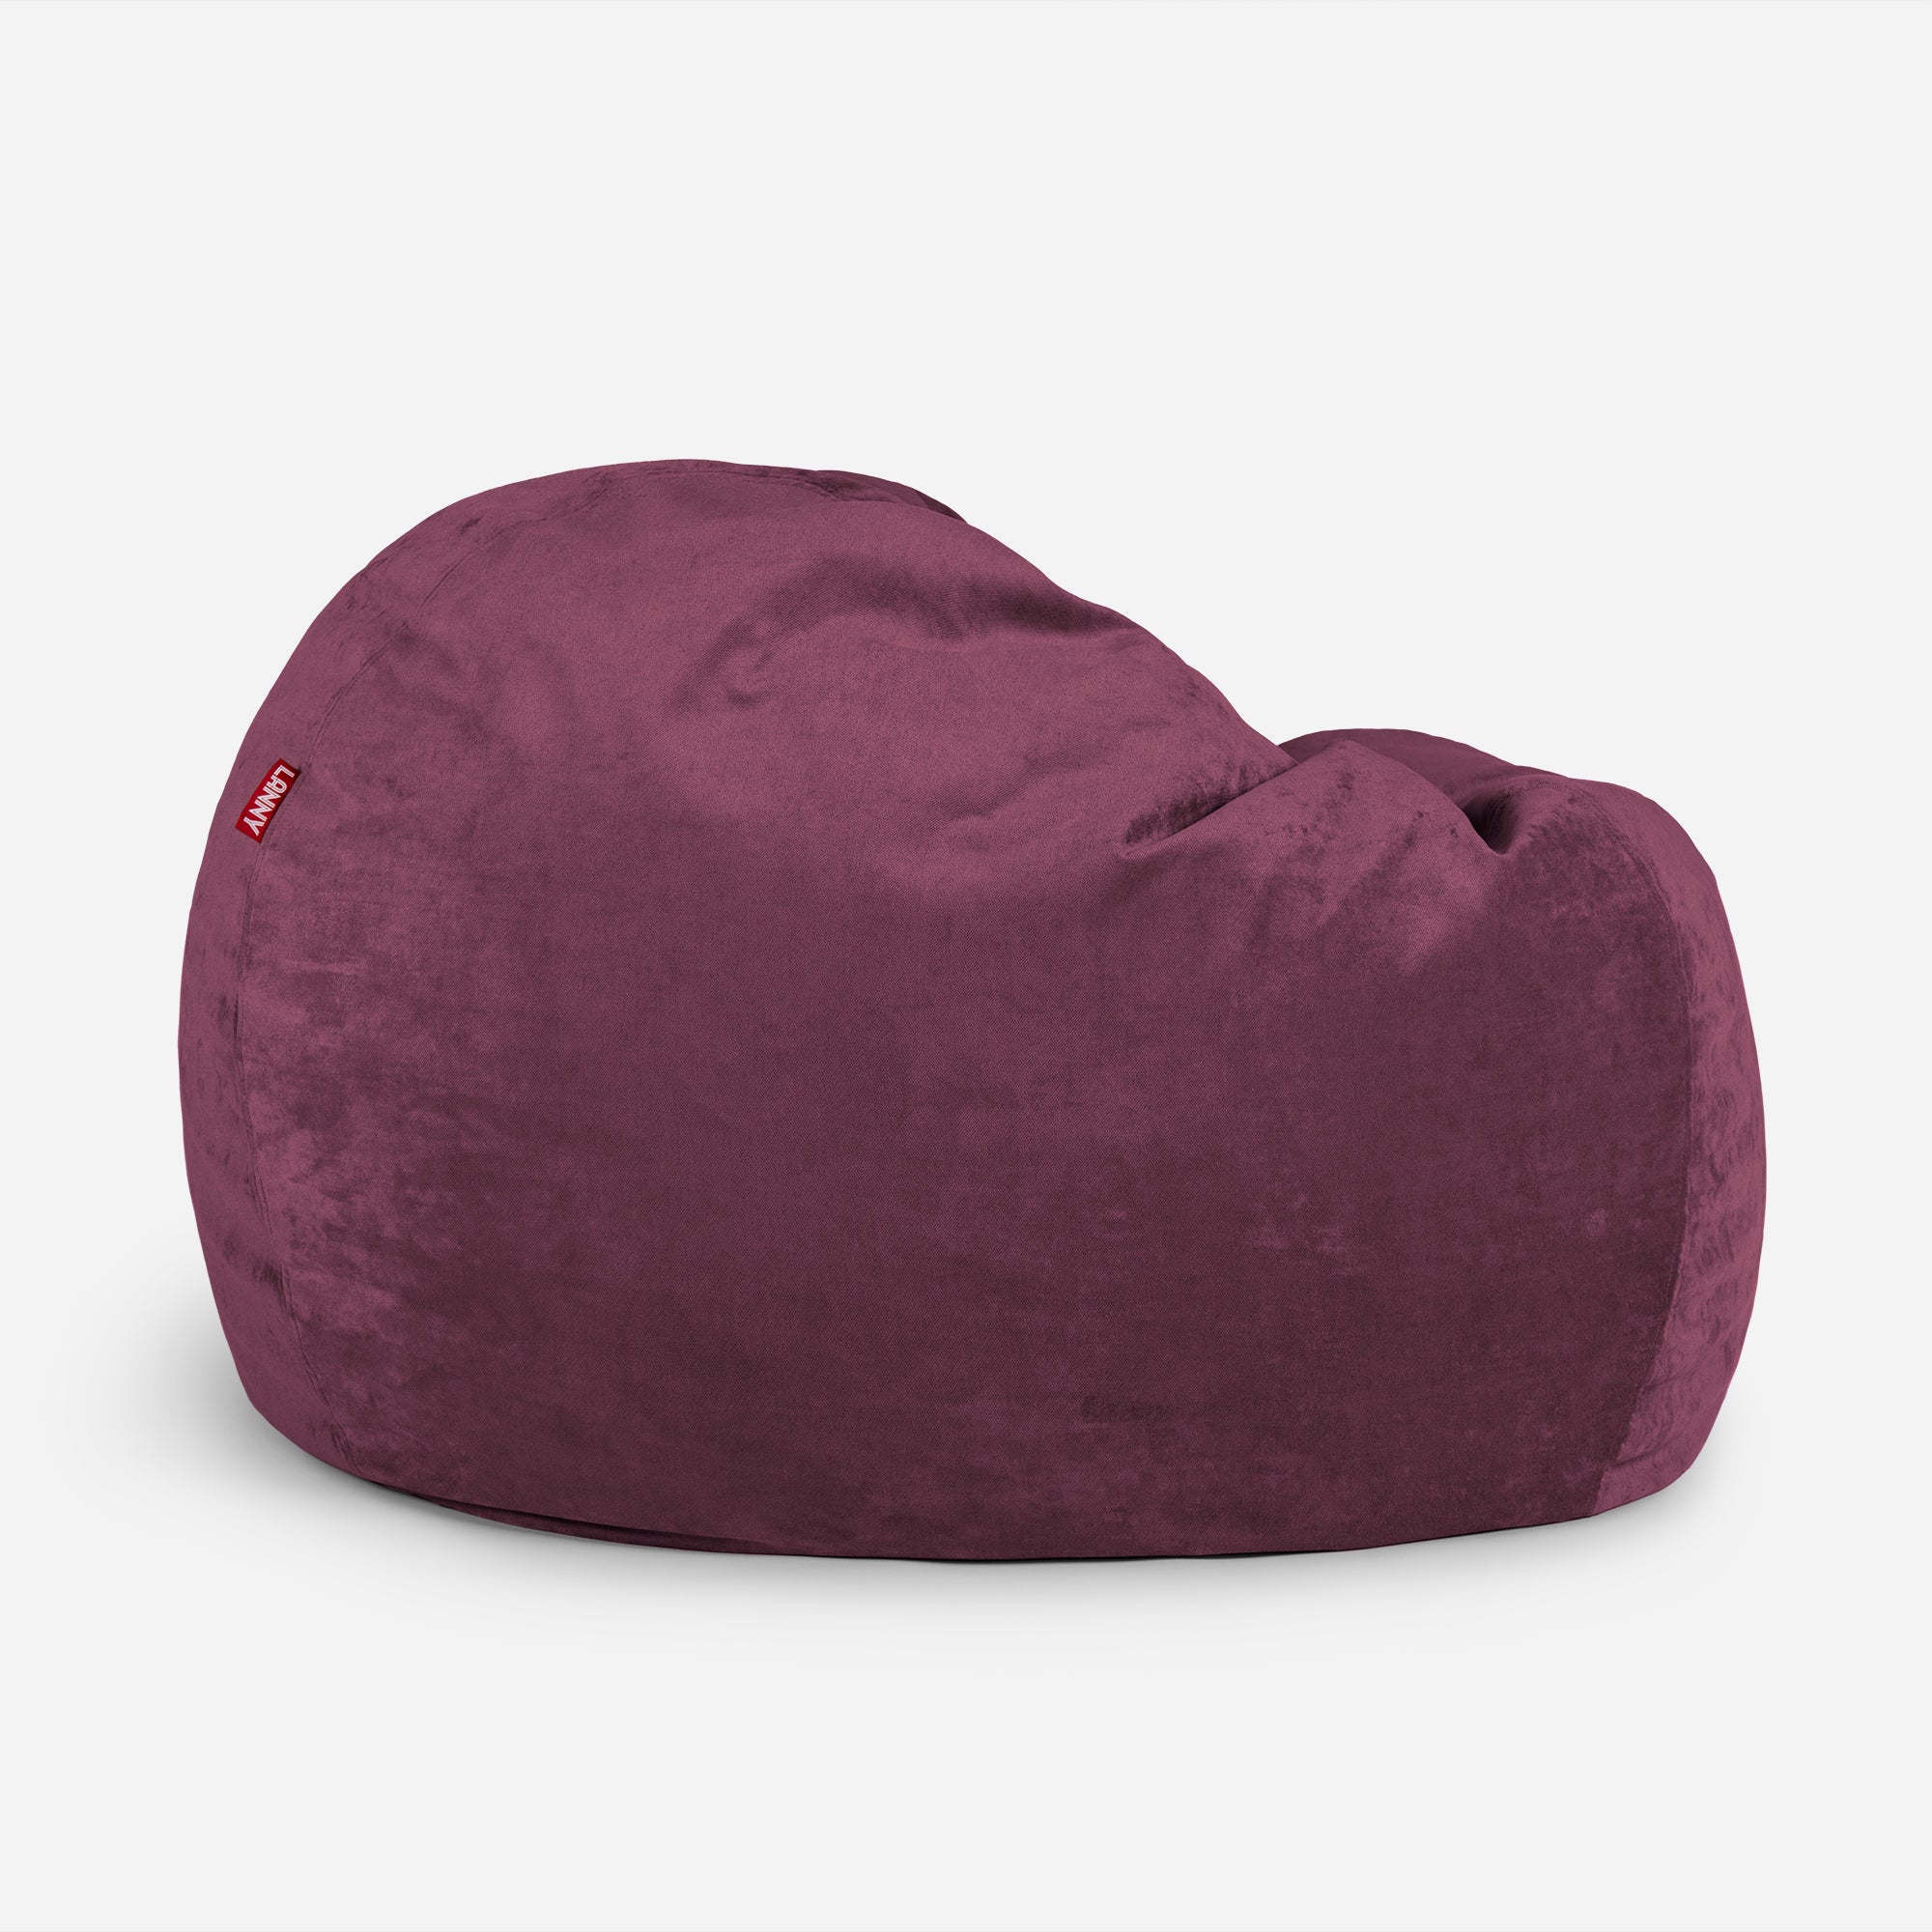 Sphere Aldo Purple Bean bag